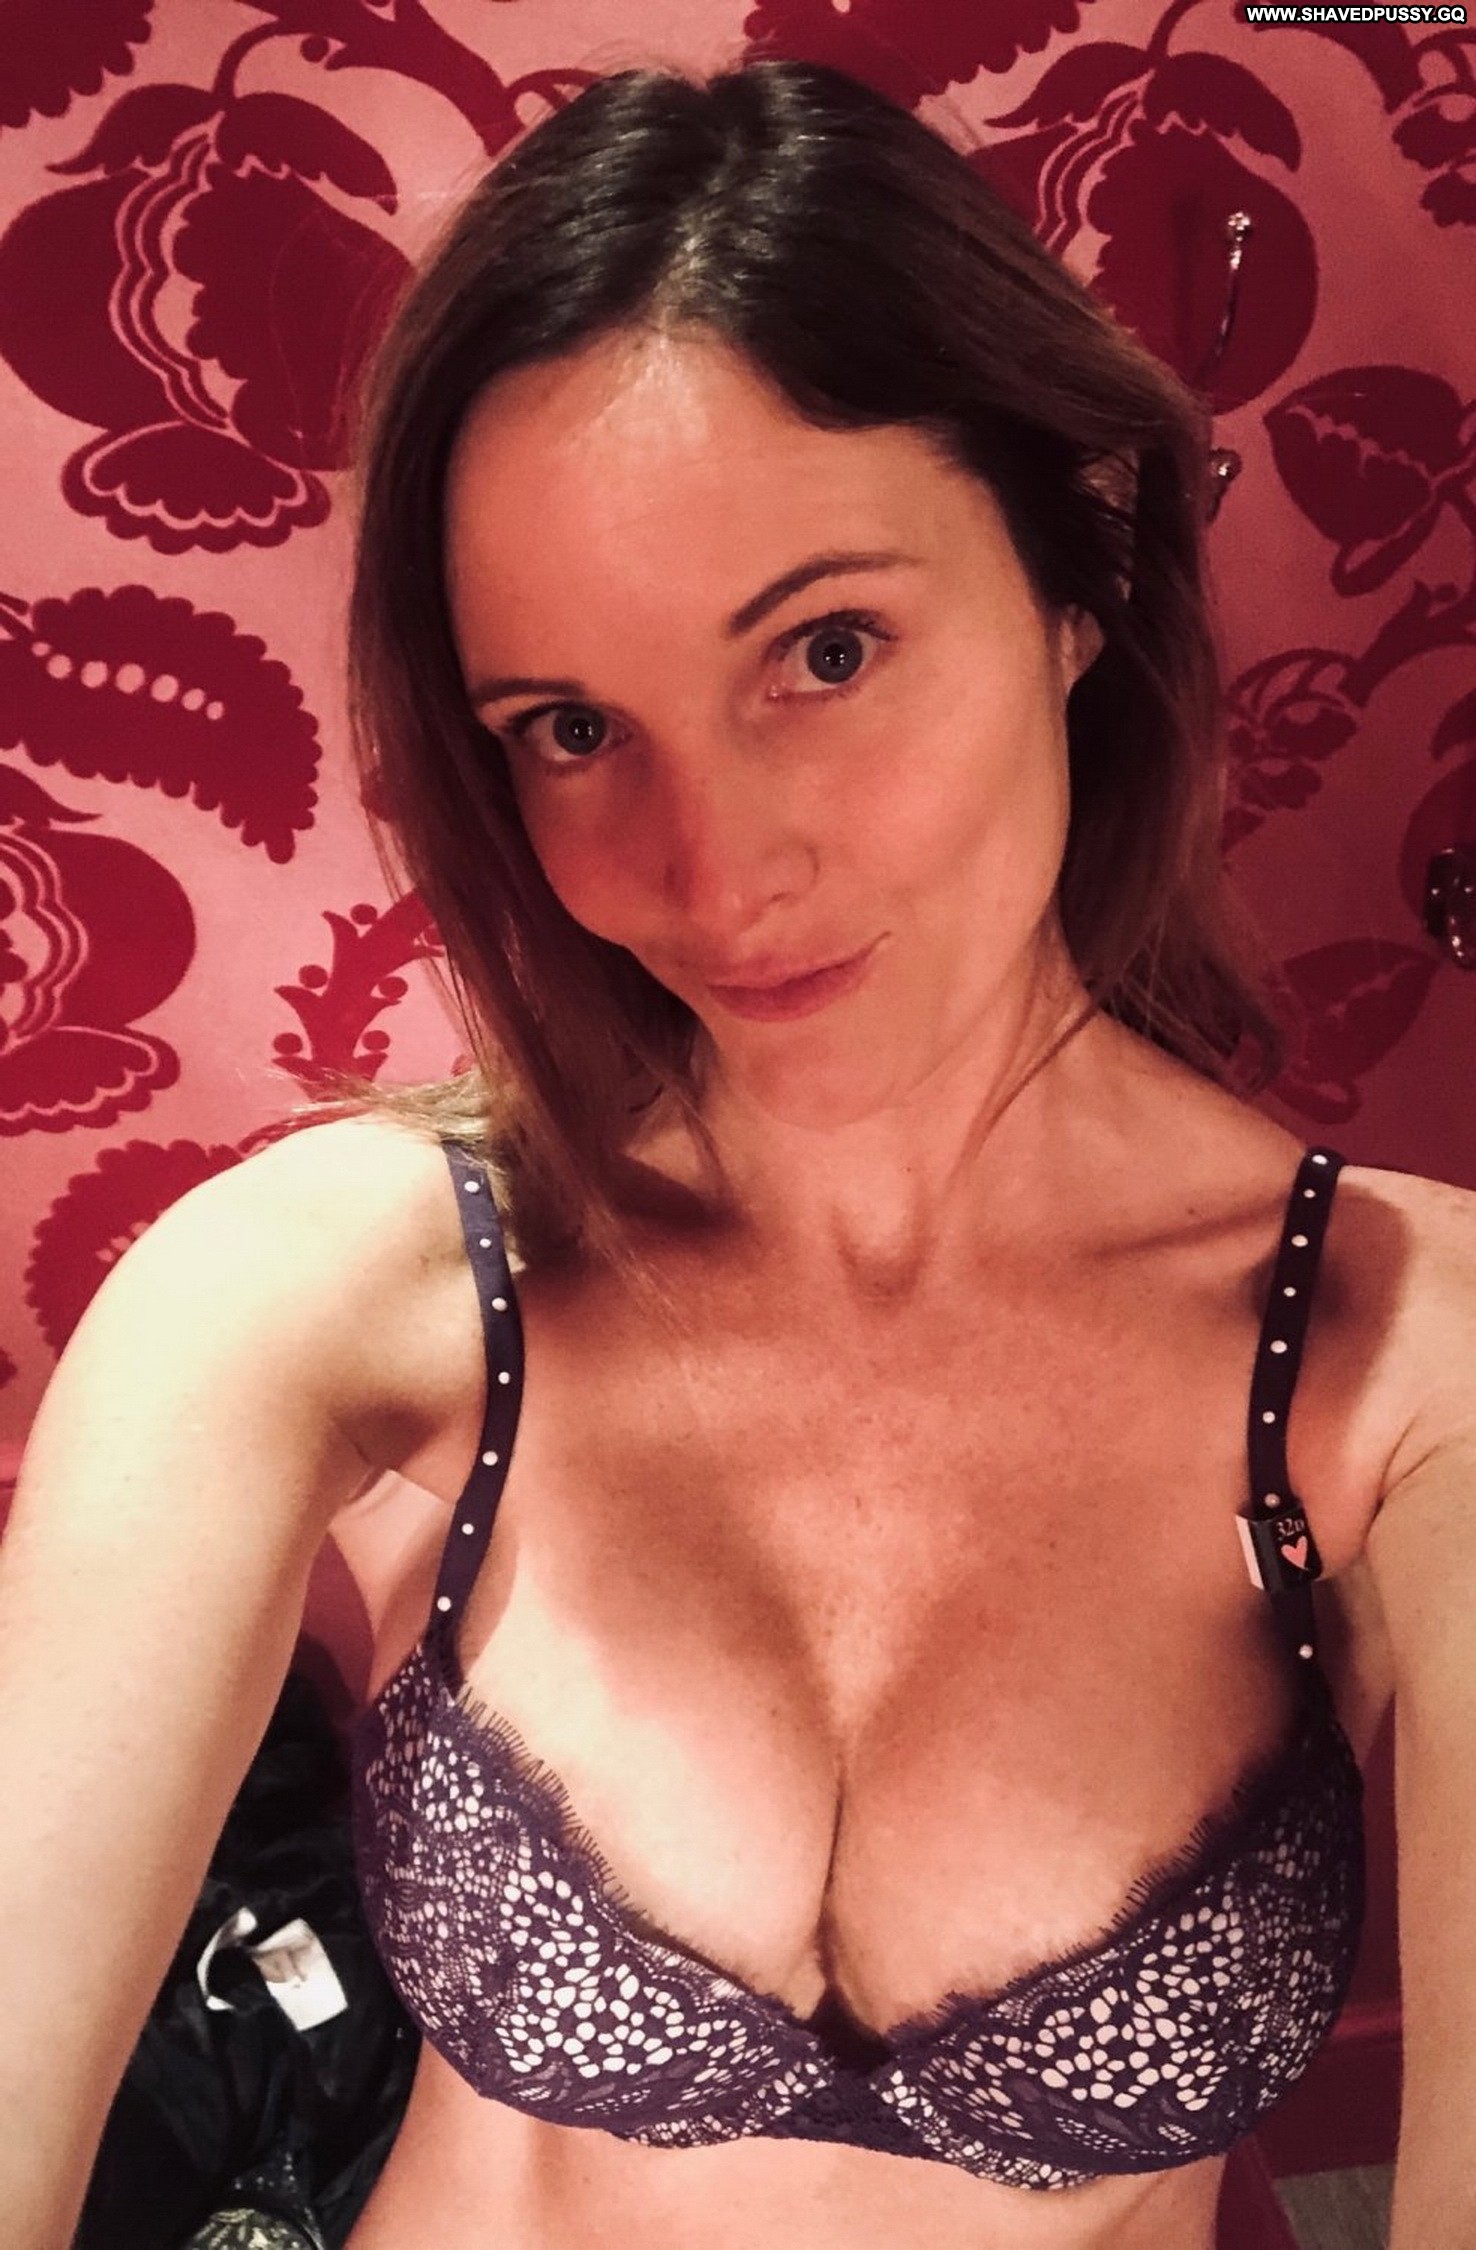 Francine Straight Slender Nude Redhead Selfies Nude Teen Peeping